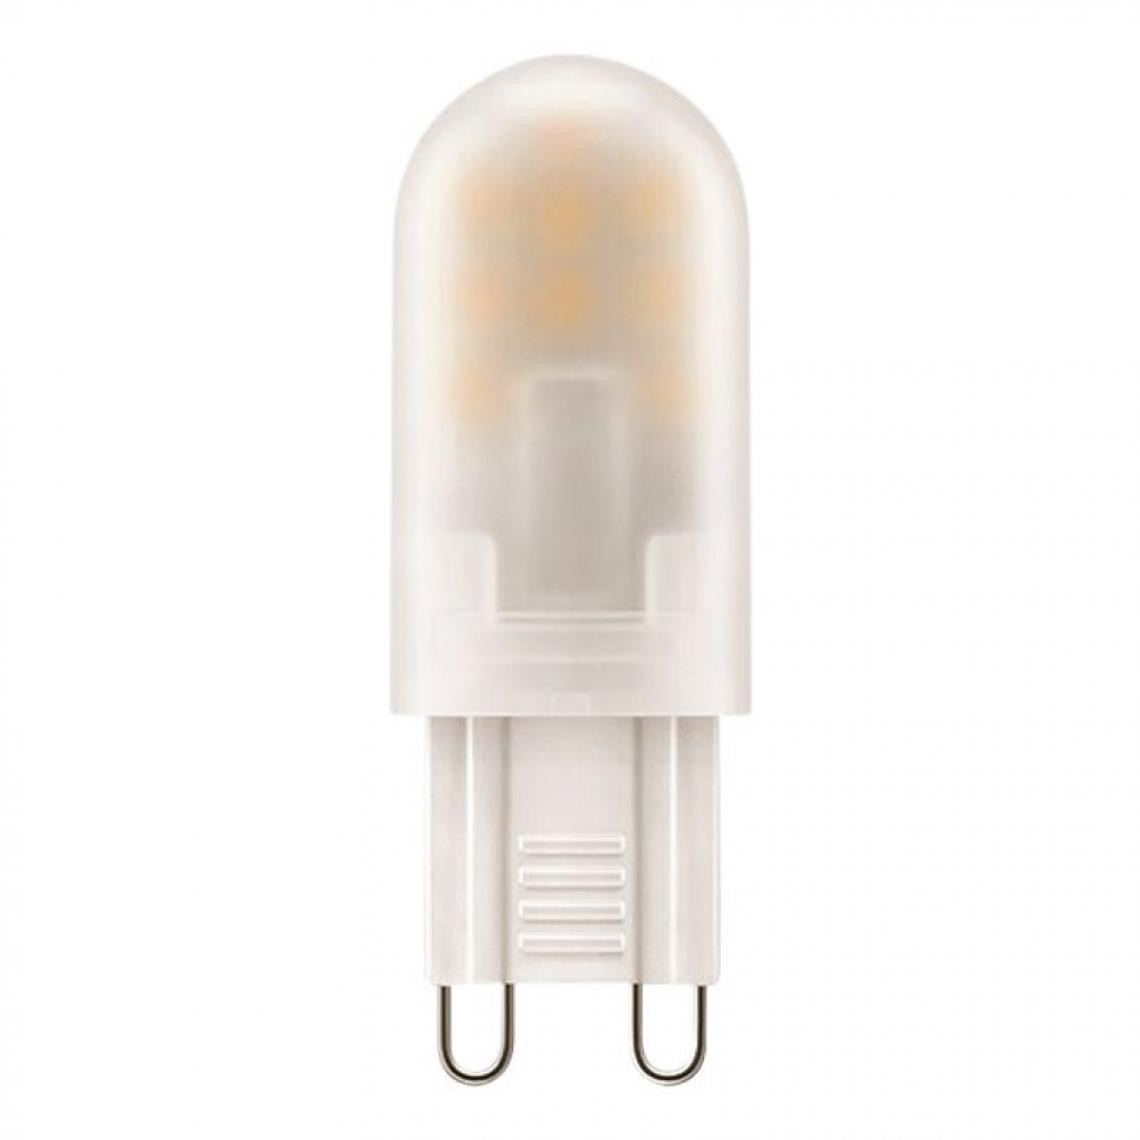 But - Ampoule LED capsule G9 25W ATTRALUX Blanc chaud - Ampoules LED